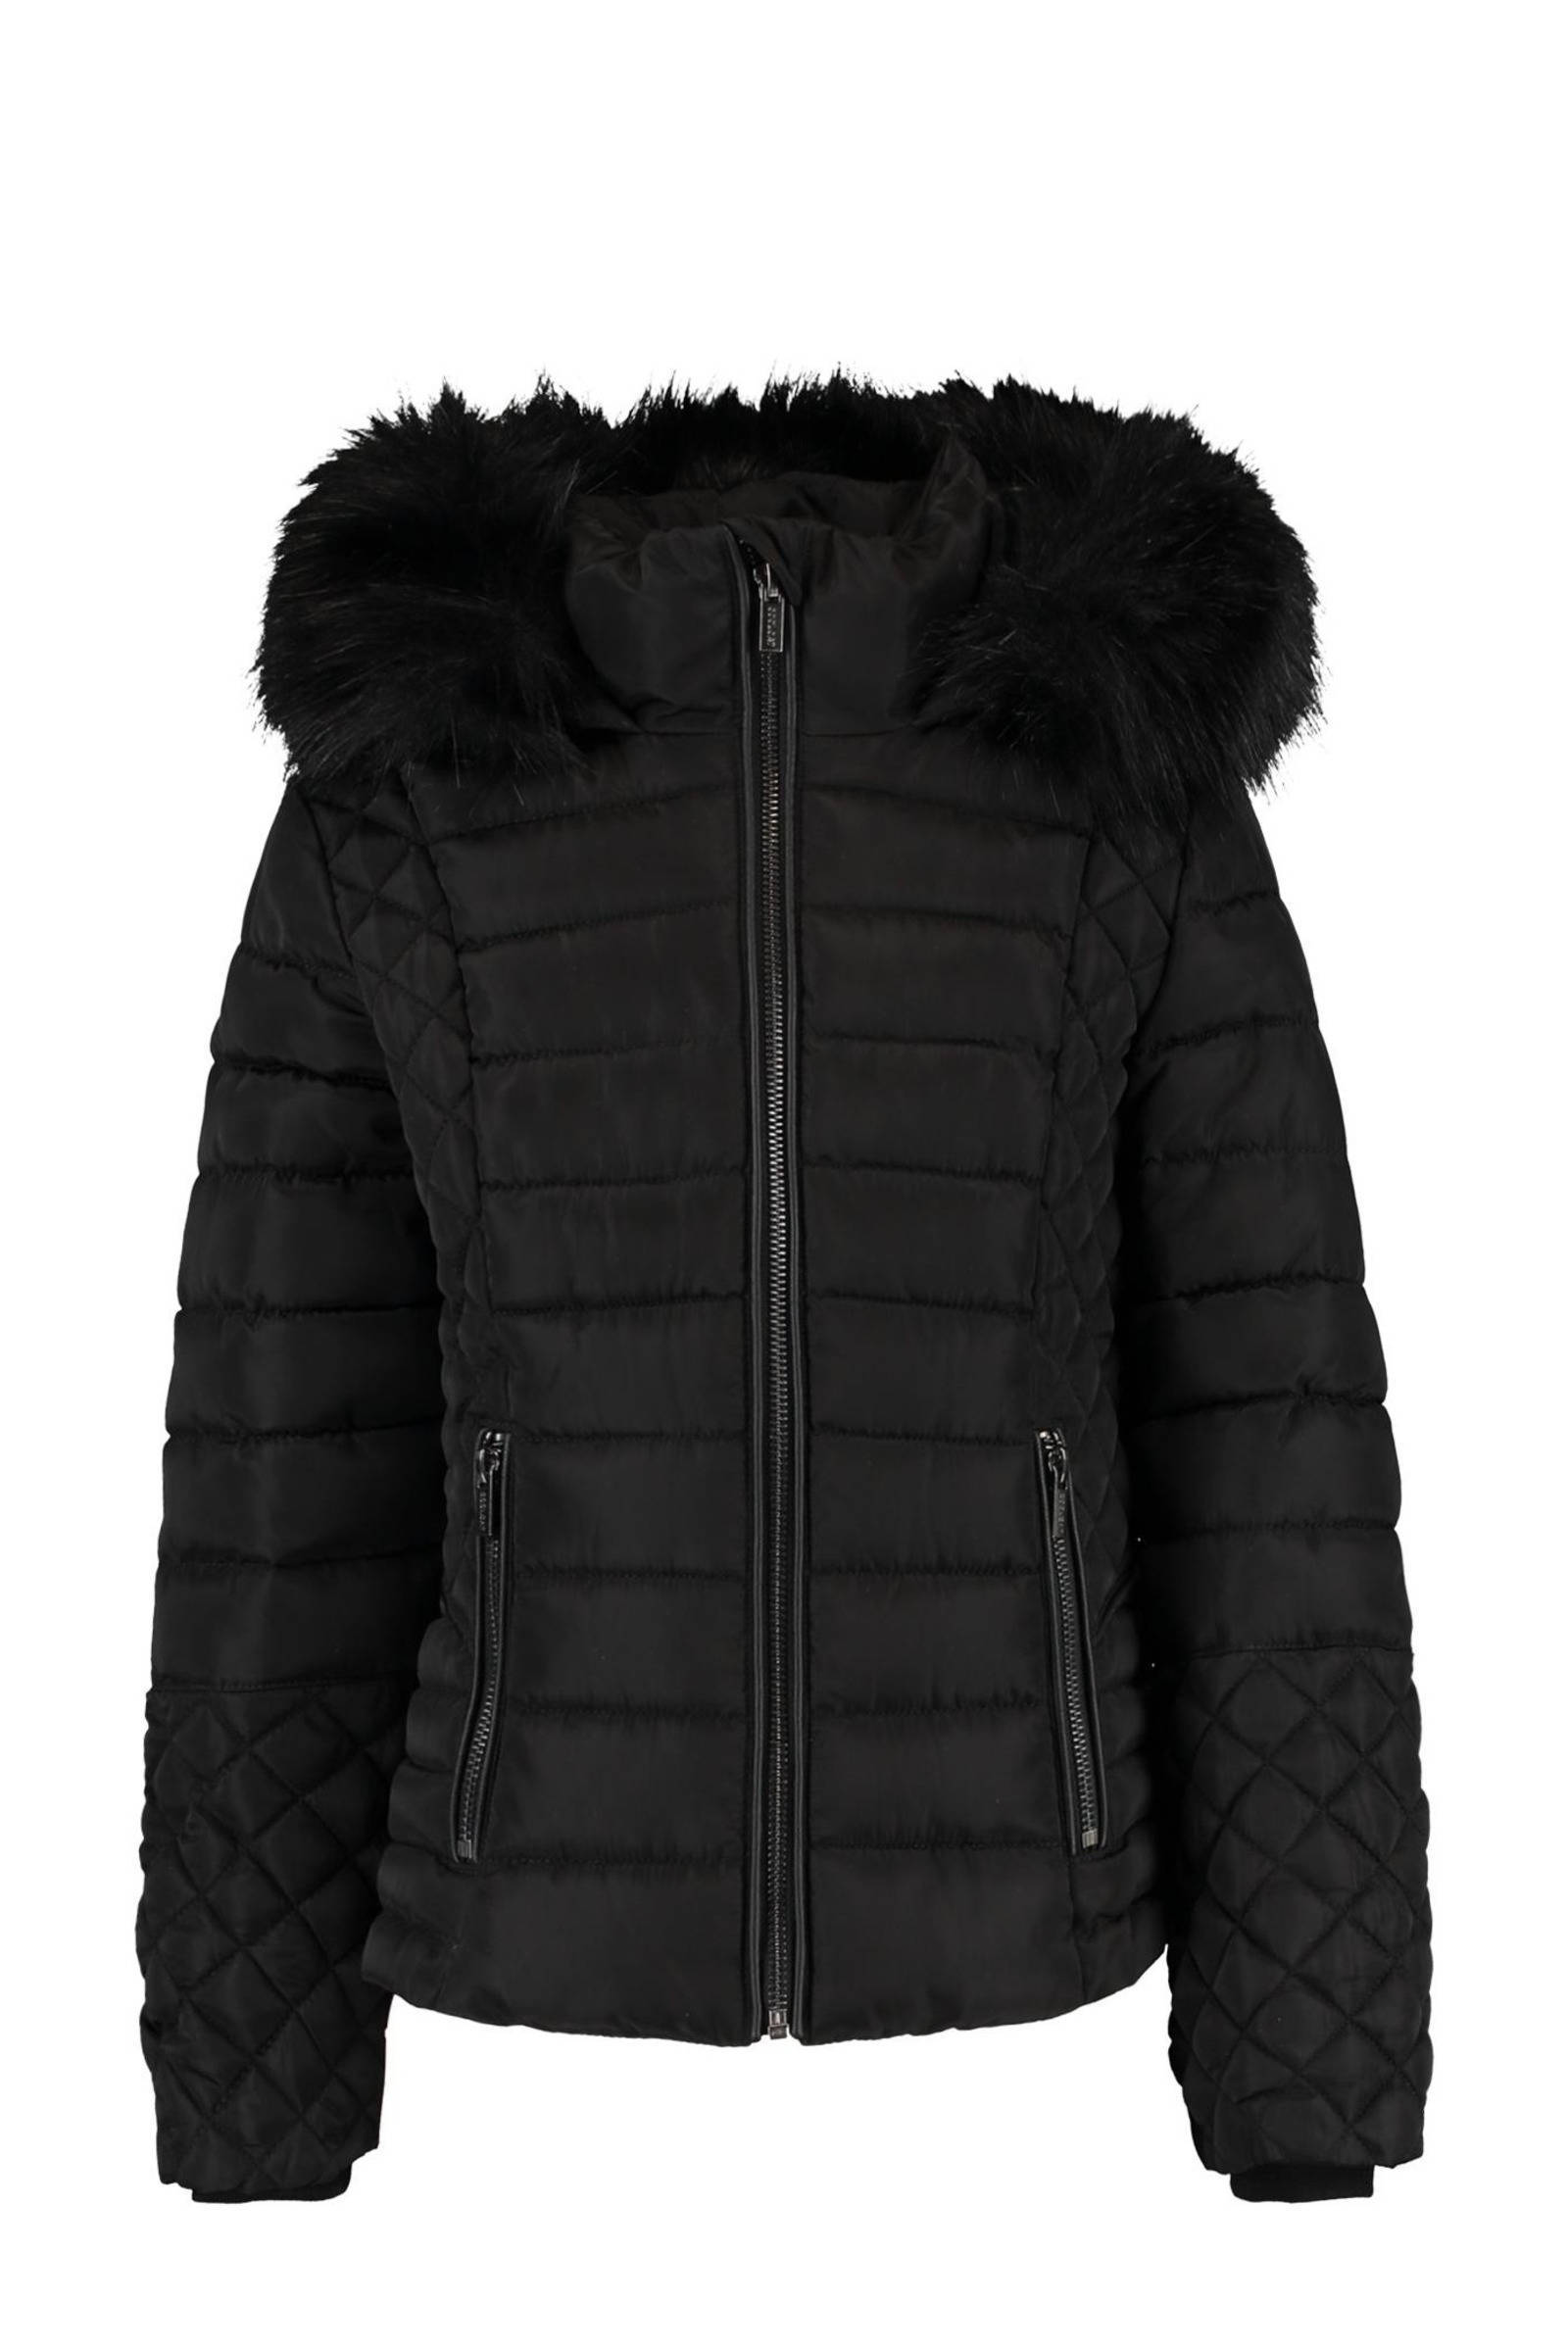 CoolCat Junior gewatteerde jas Jodie zwart online kopen